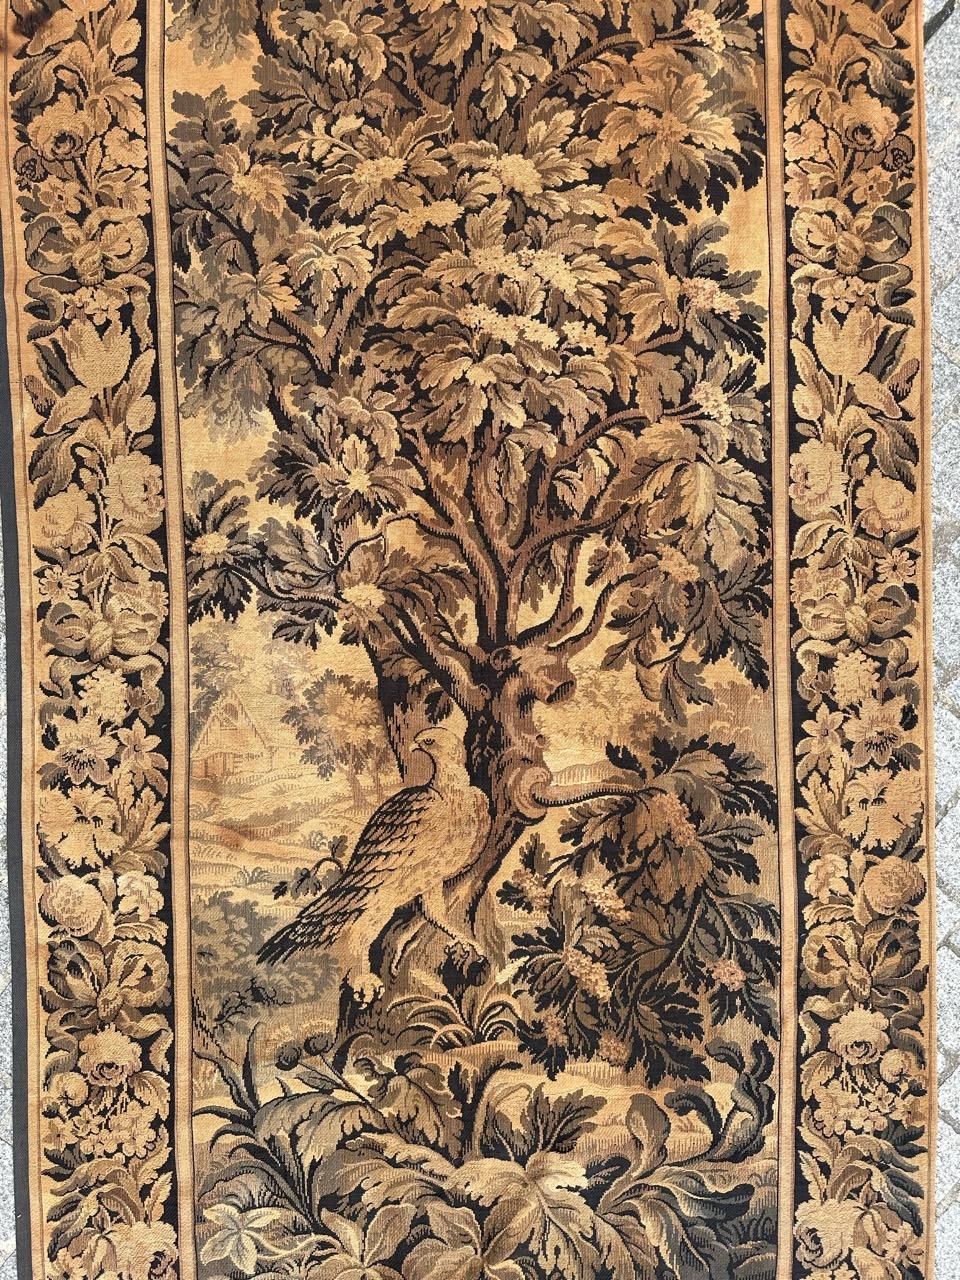 Sehr hübscher antiker französischer Wandteppich im Aubusson-Stil mit schönem Design aus der Nature mit einem Adler. Auf einem Jacquardwebstuhl aus Wolle und Baumwolle gewebt.
✨✨✨
